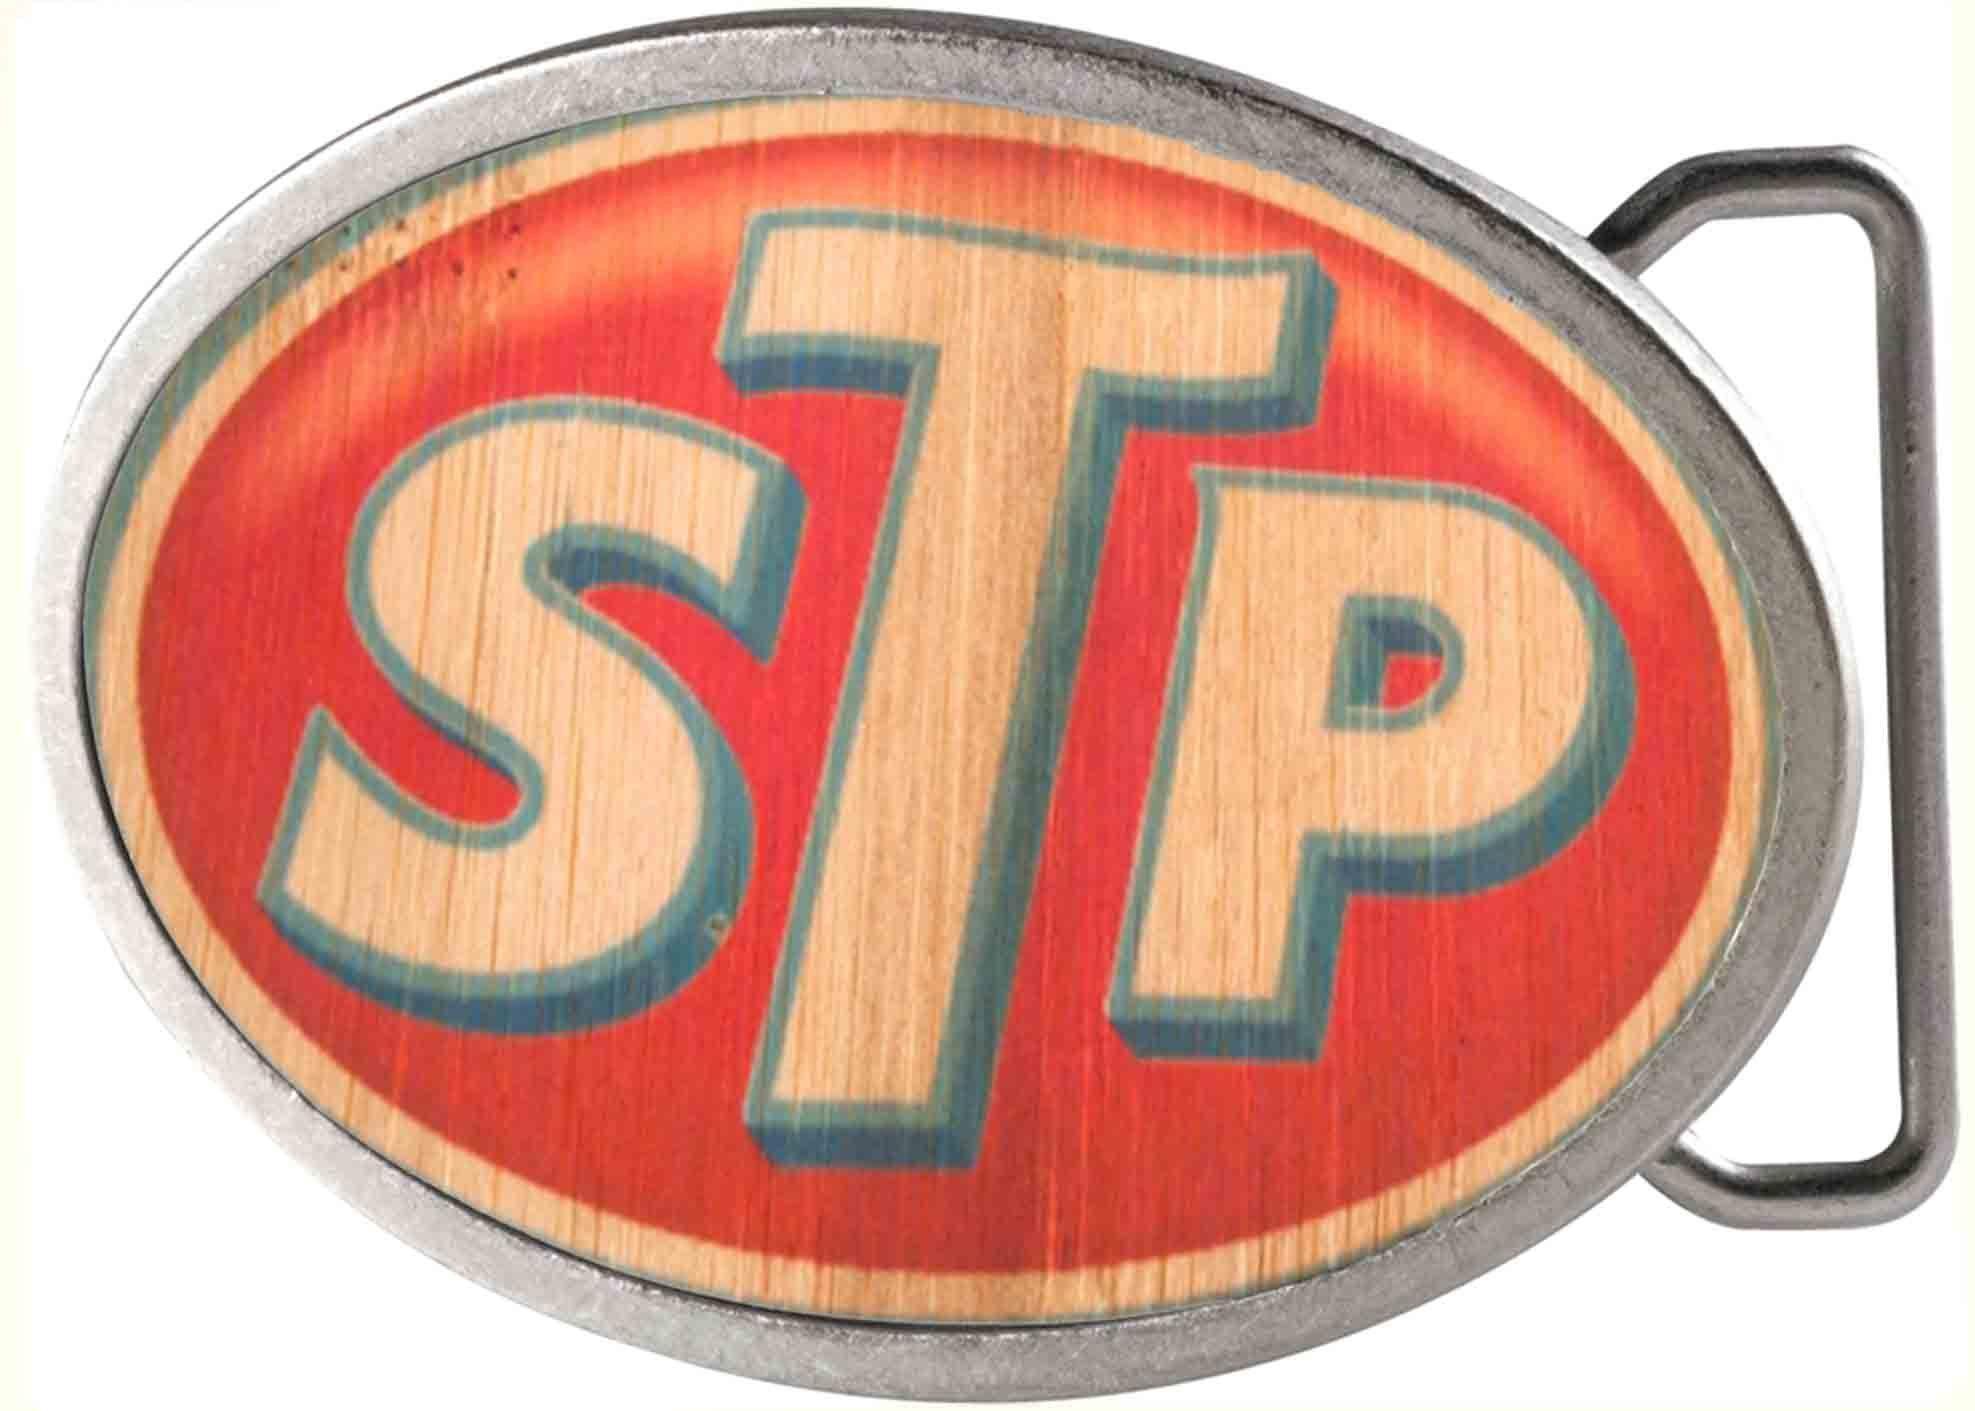 Star in Oval Logo - STP Logo Framed FCWood Natural Blue Red Oval Rock Star